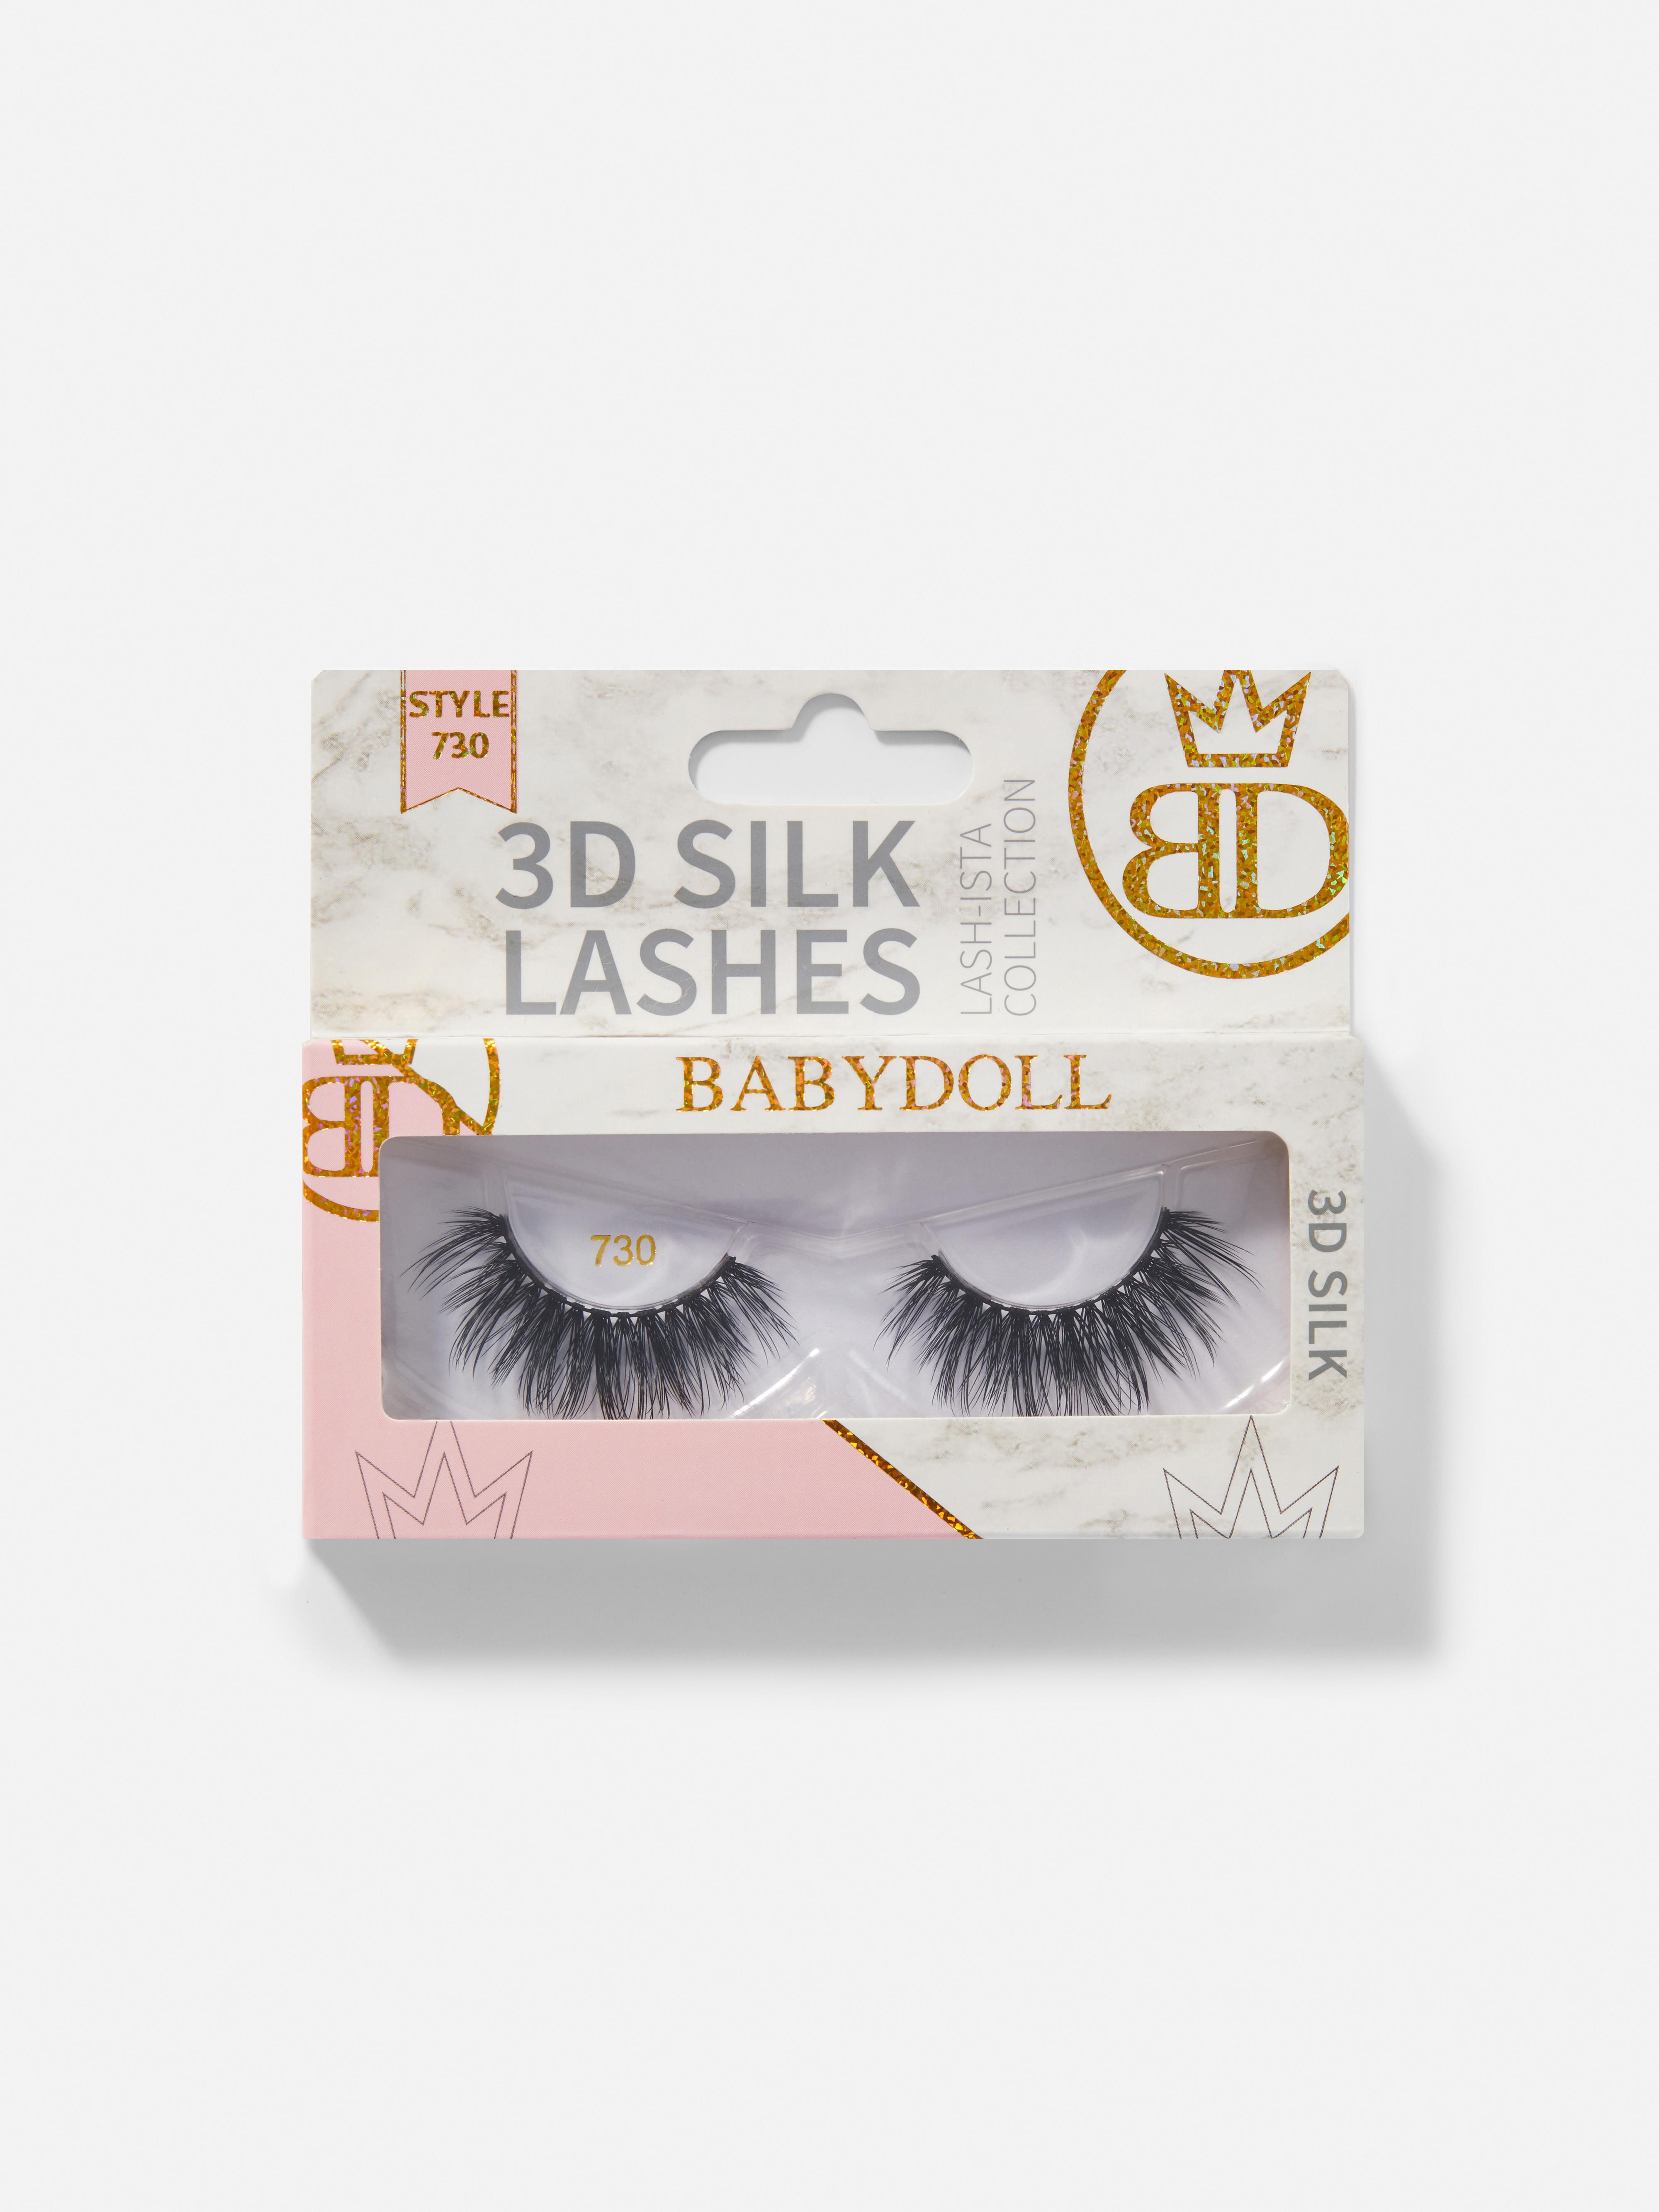 Babydoll 3D Silk Lashes